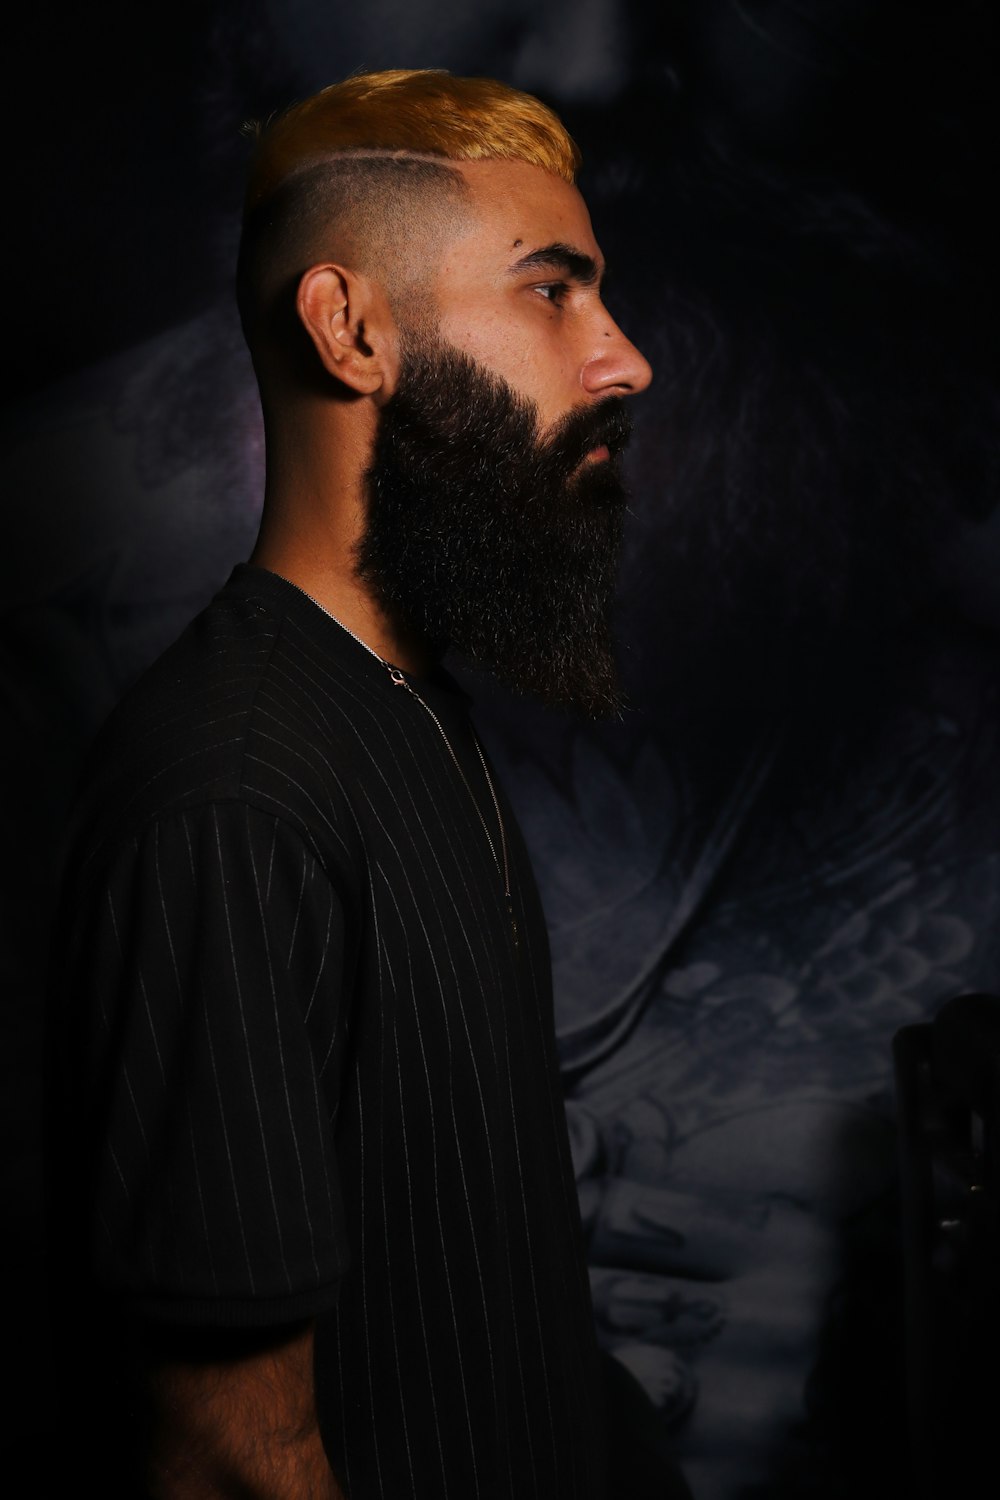 Un homme avec une barbe et un crâne rasé photo – Photo La personne Gratuite  sur Unsplash